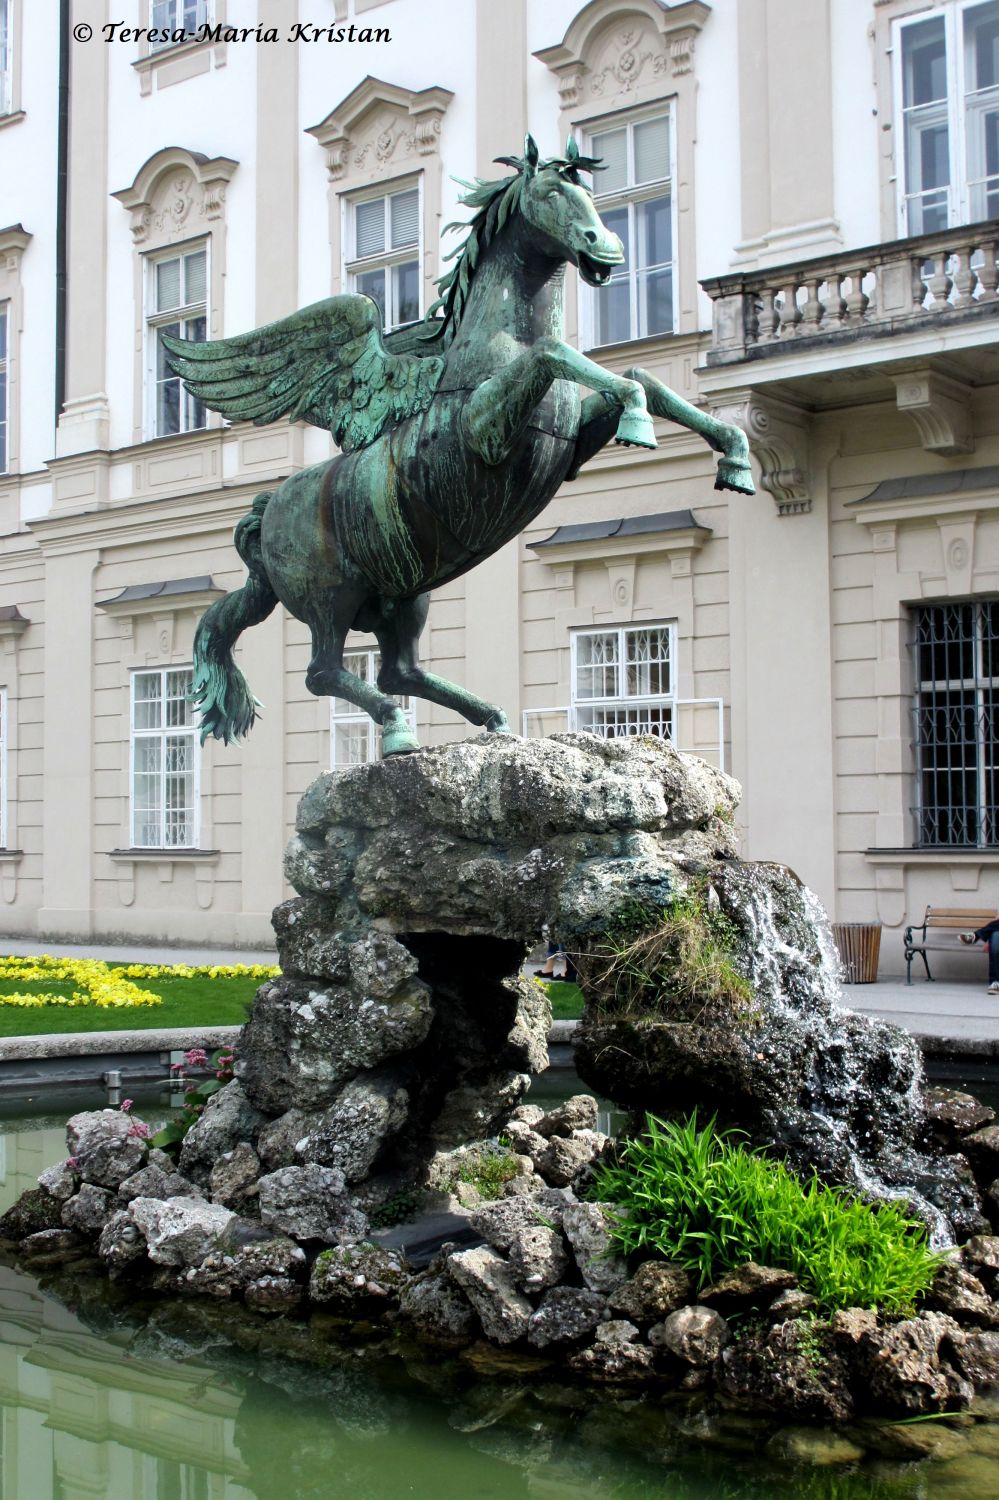 Pegasusbrunnen, Mirabellgarten